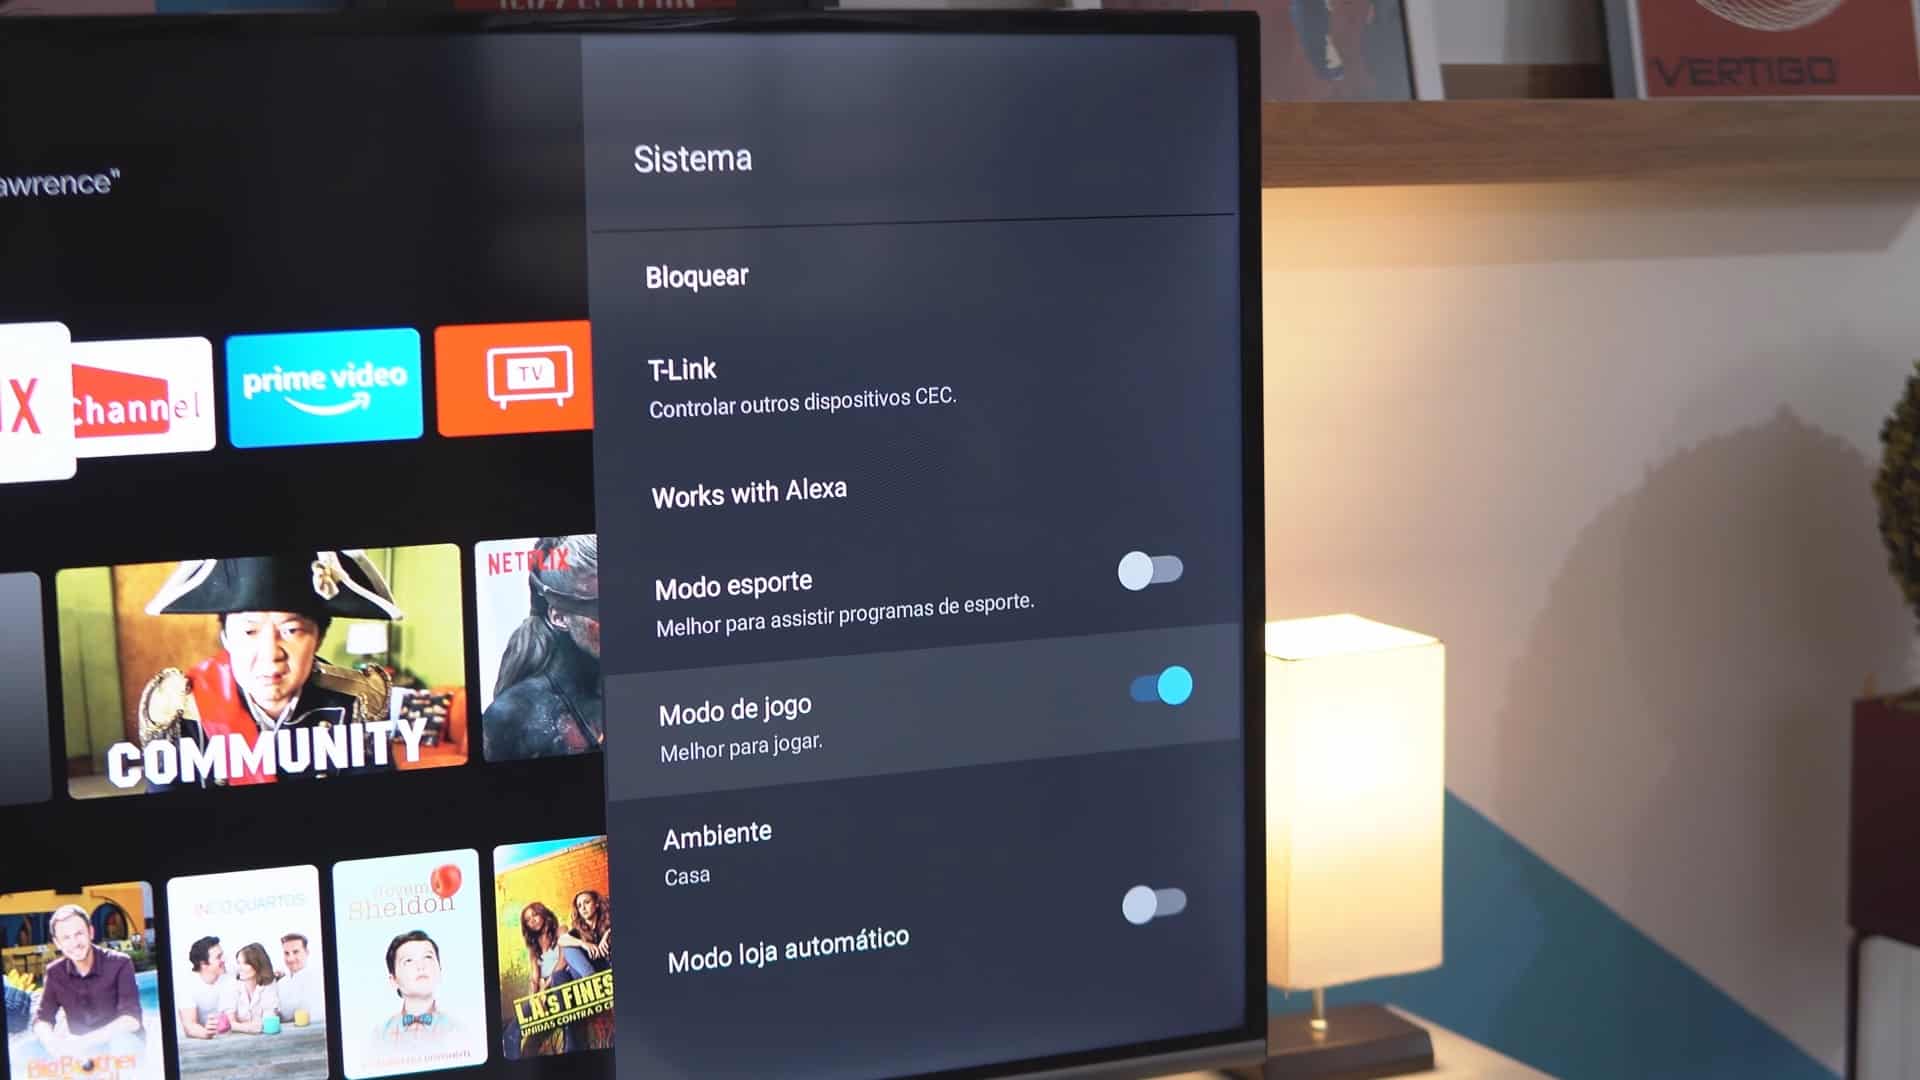 TV 4K Semp SK8300: uma Android TV mais barata que não decepciona